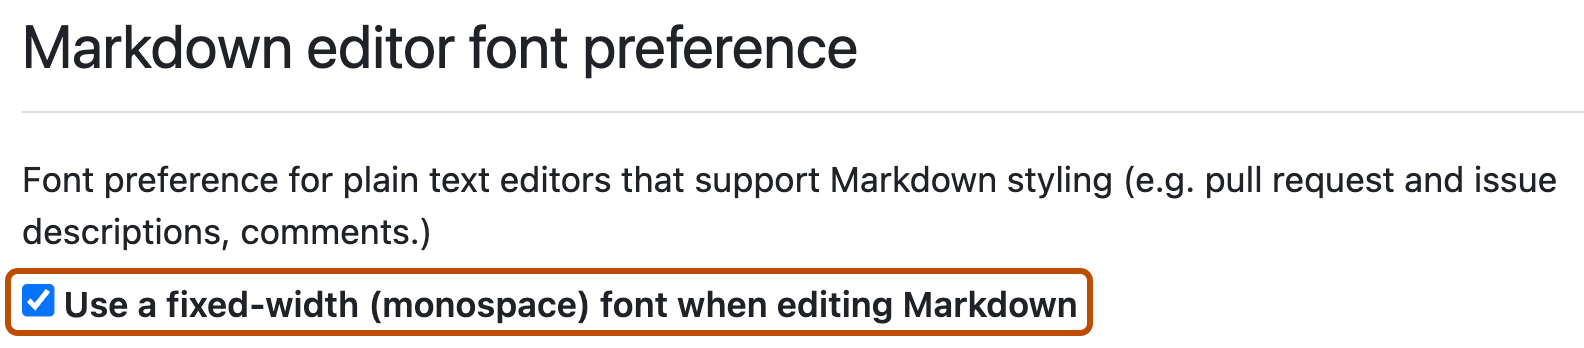 Captura de pantalla de la configuración de usuario GitHub para la preferencia de Markdown. La casilla para utilizar una fuente de ancho fijo en Markdown está activa y resaltada en naranja oscuro.